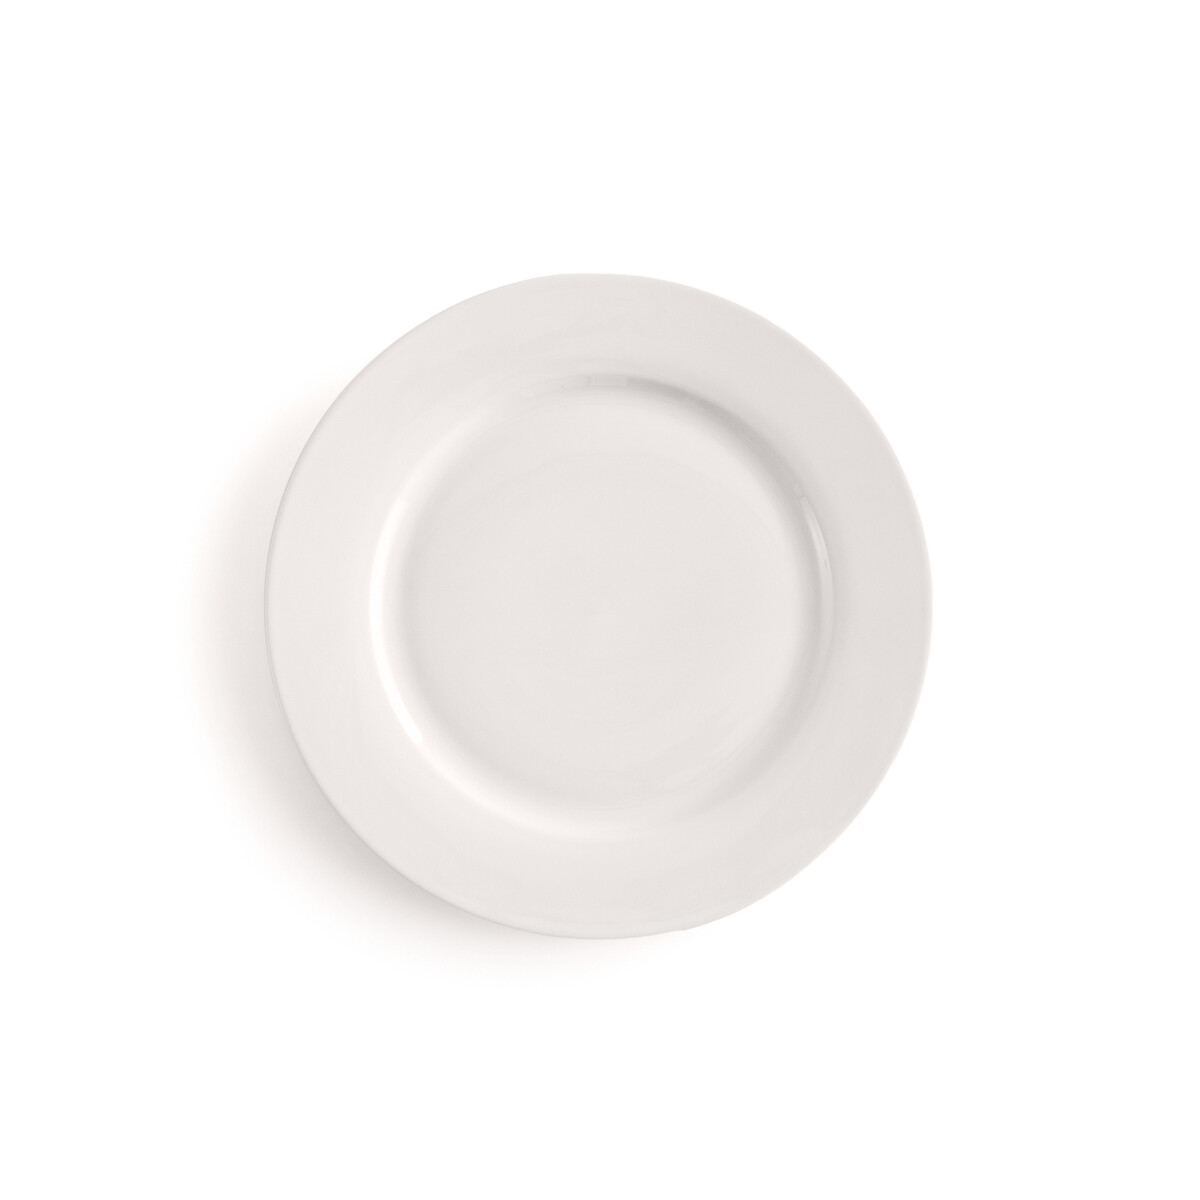 Комплект из 4 плоских тарелок Из фарфора Ginny единый размер белый